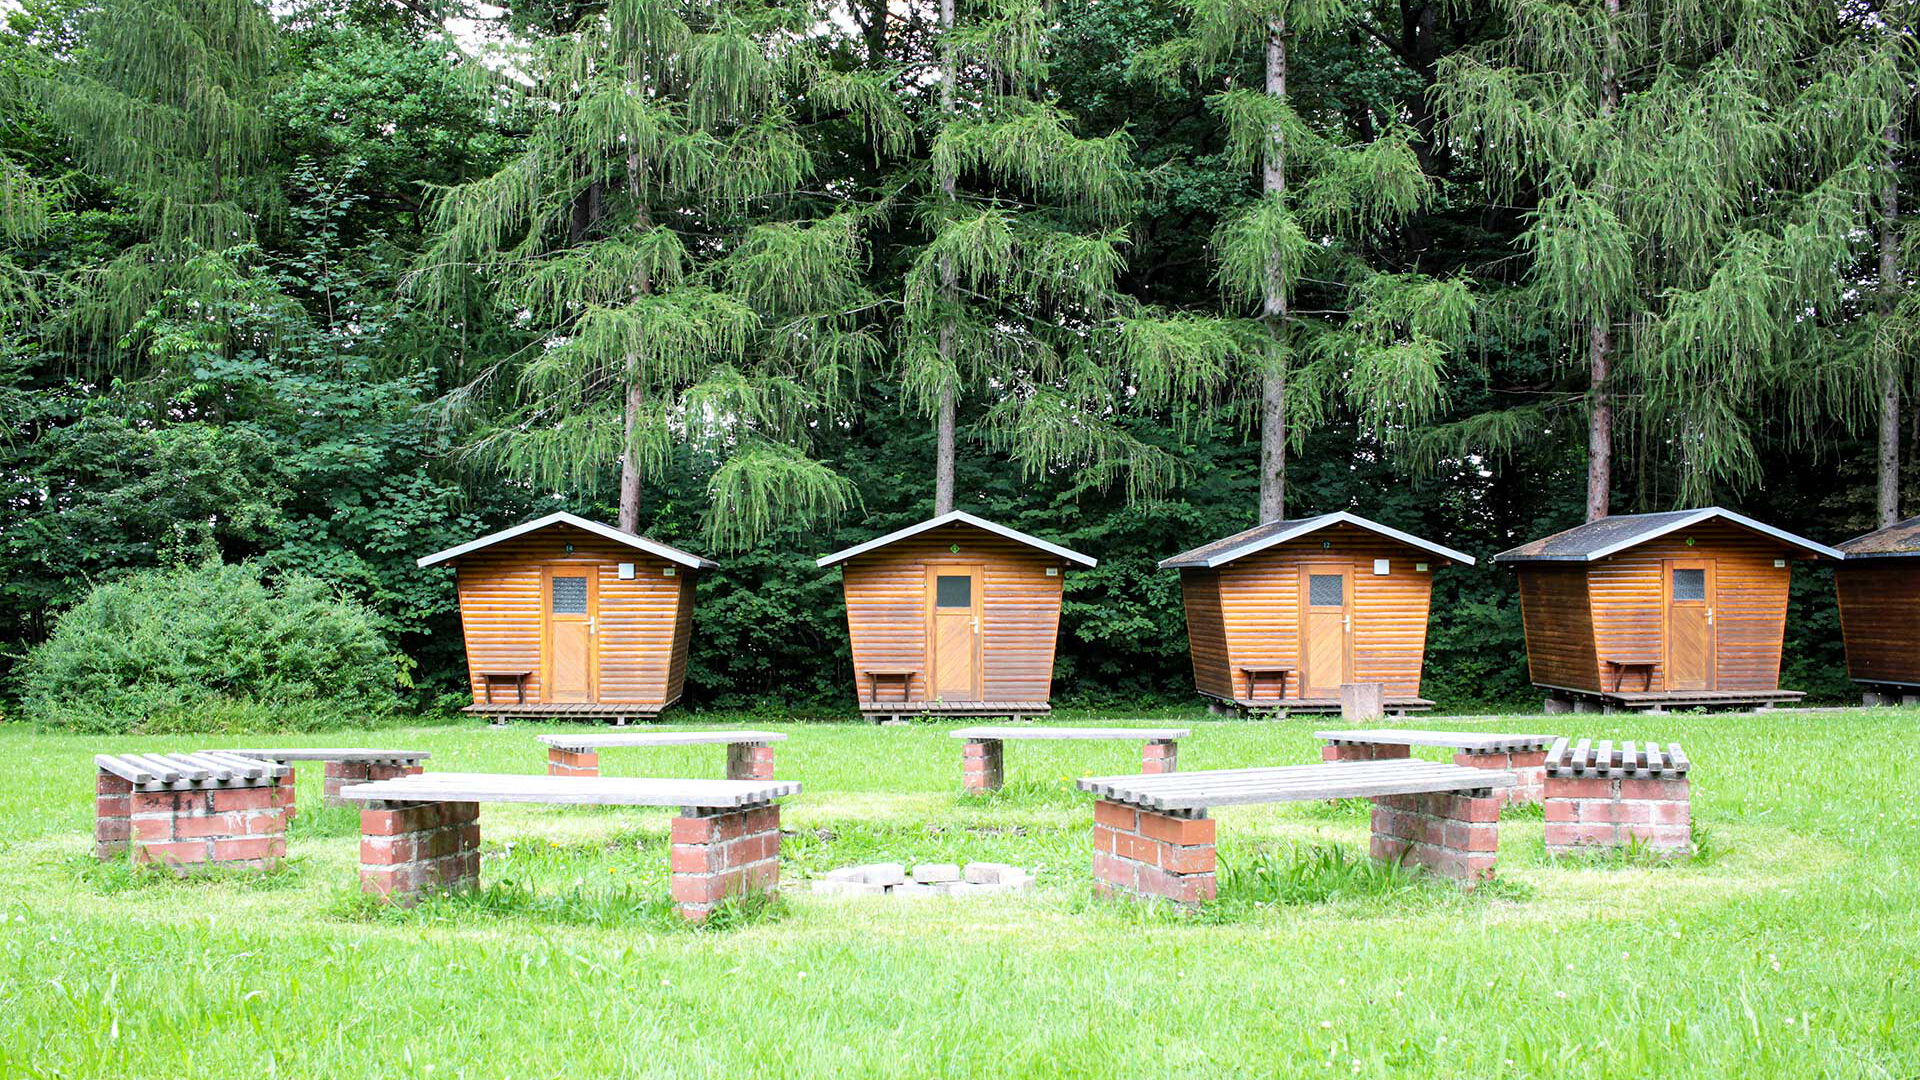 Die Lagerfeuerstelle auf der großen Wiese mit acht festen Sitzbänken und im Vordergrund stehen vier Holzhäuschen.